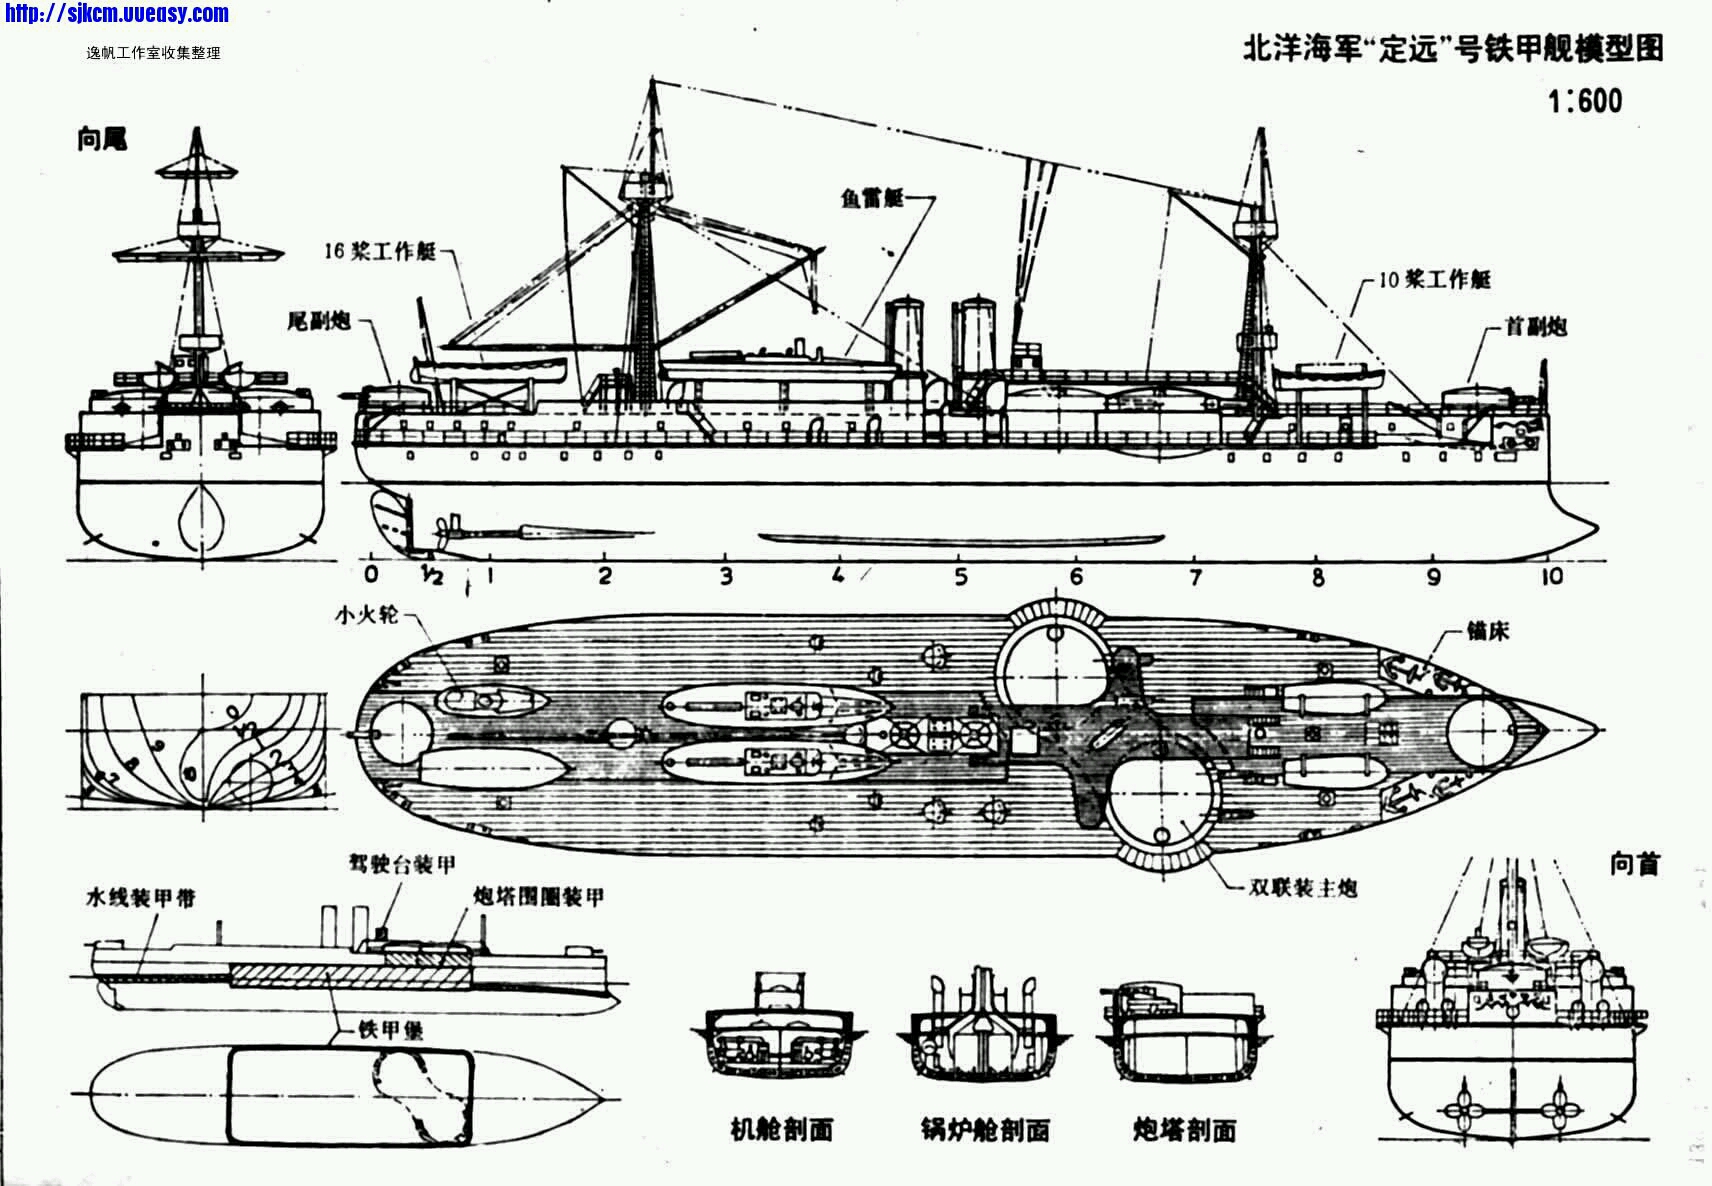 分享一些战舰三视图(北洋水师篇)